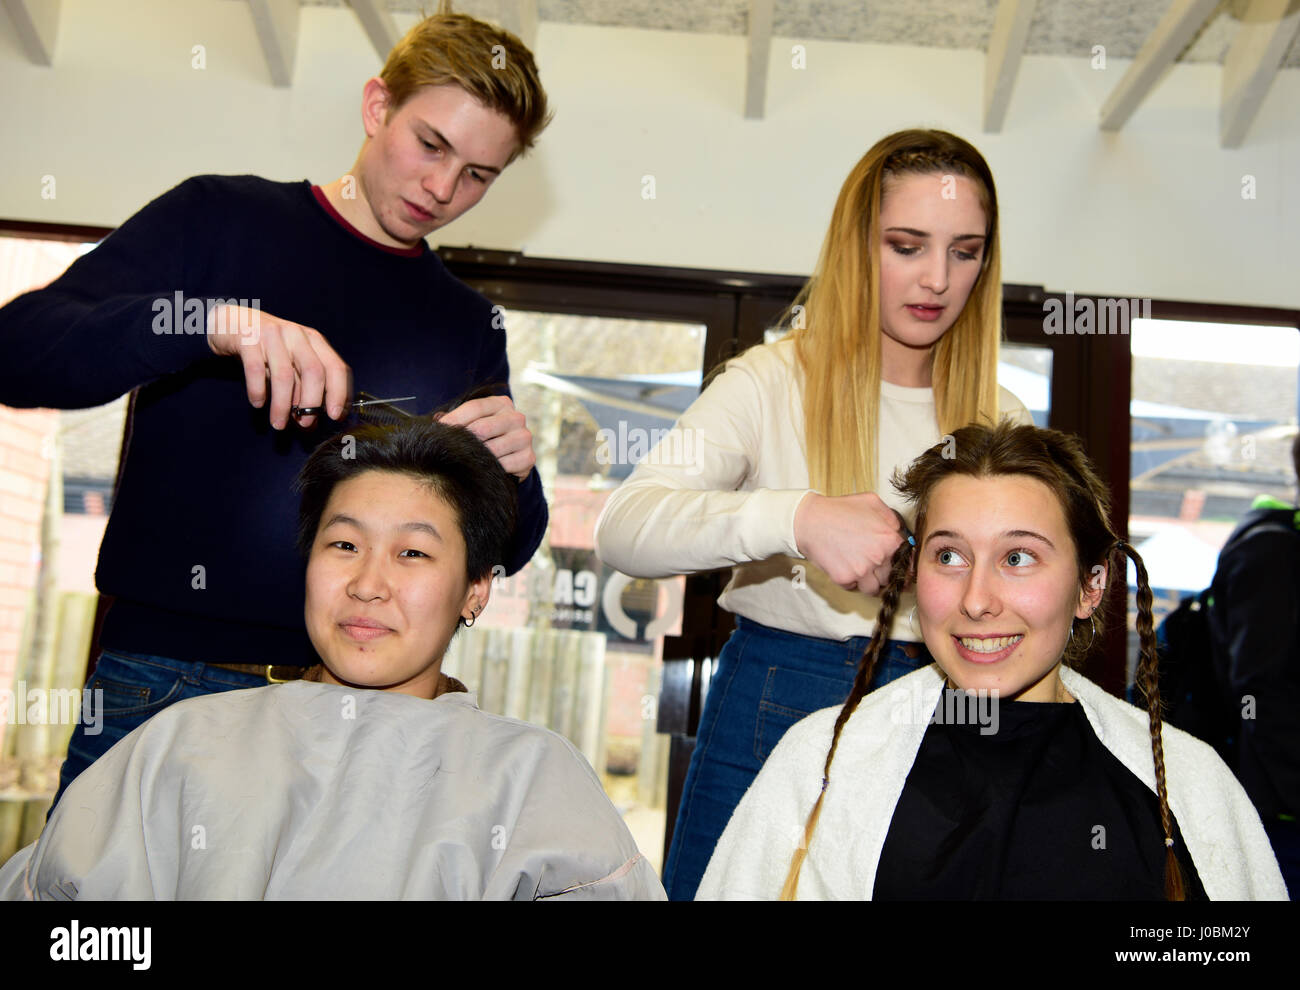 Zwei 18-jährige Studentinnen mit ihren Köpfen rasiert von Kommilitonen zu helfen, Spenden für die Krebsforschung, Alton, Hampshire, UK. 31.03.2017. Stockfoto